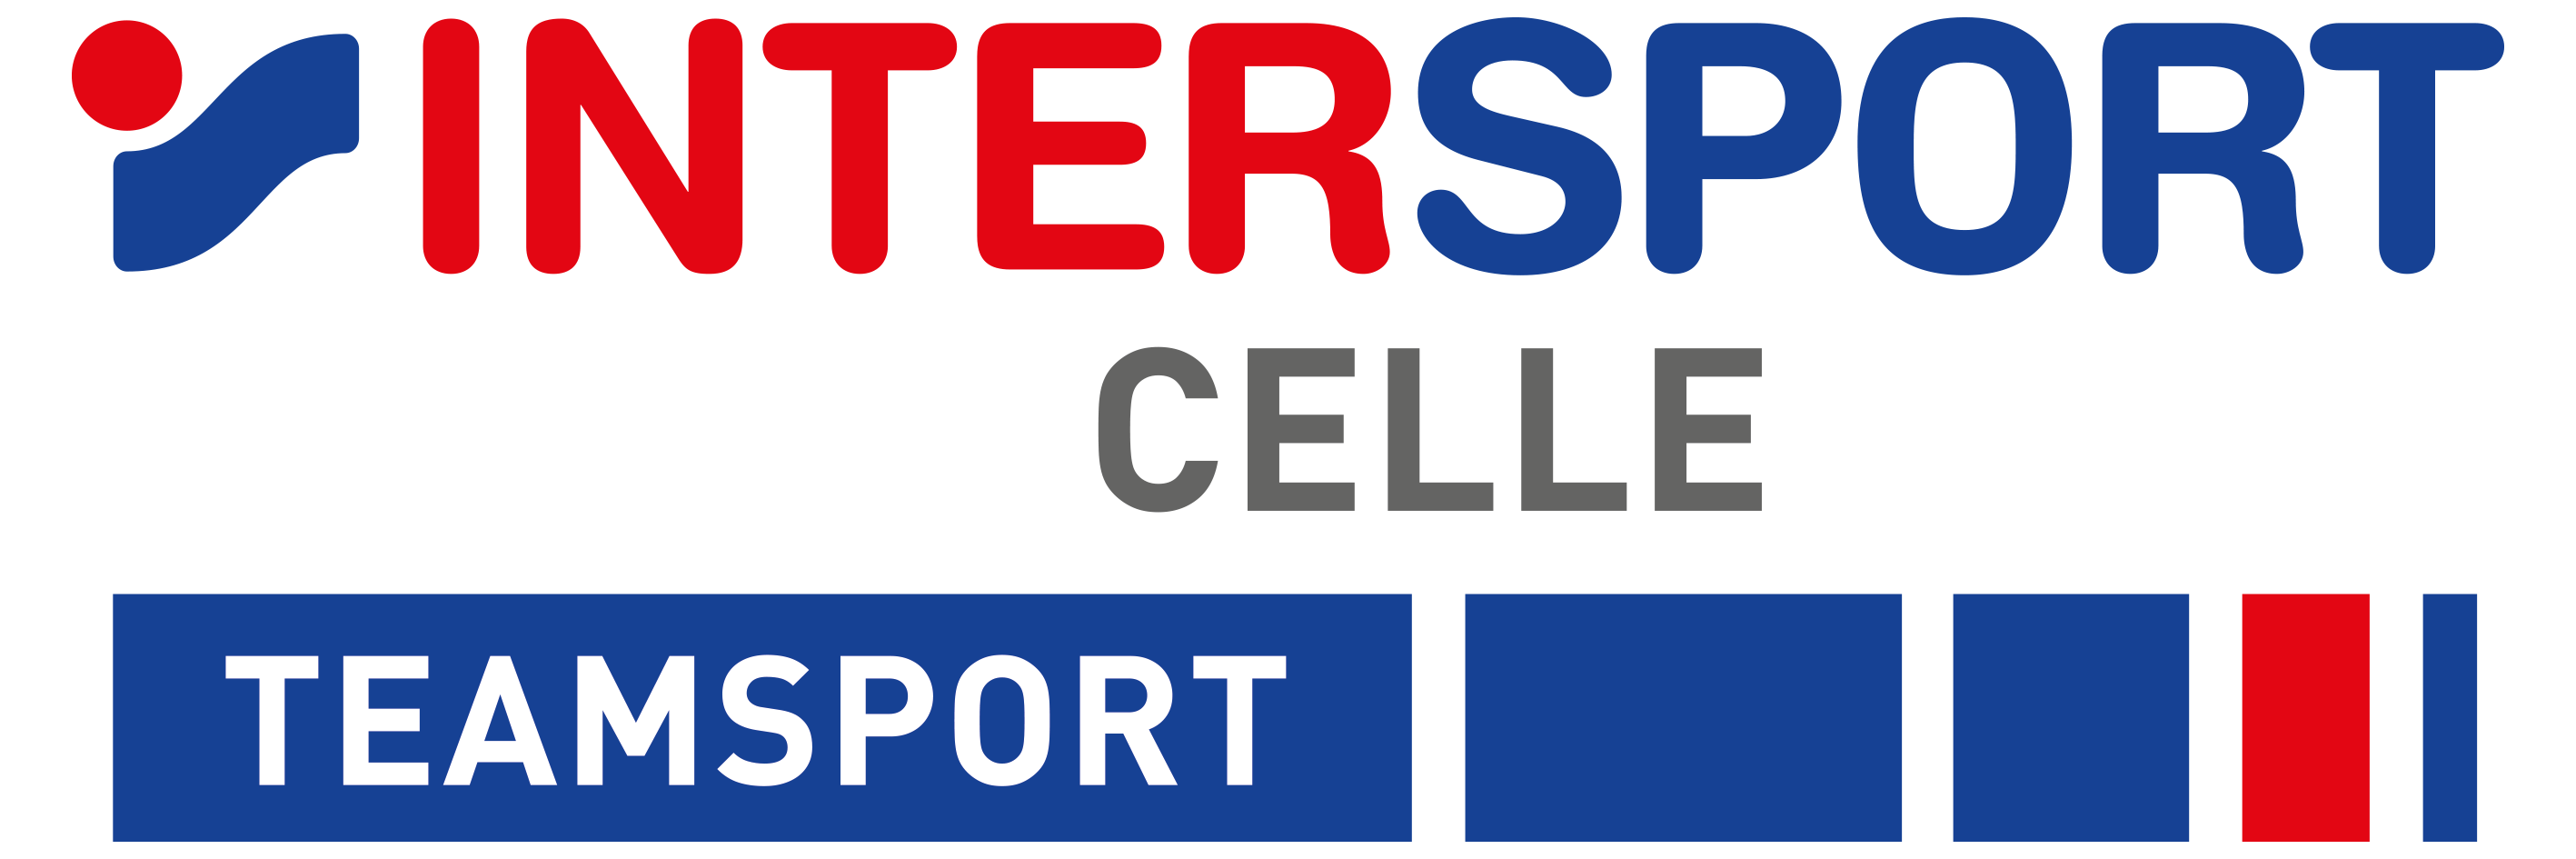 VfL Westercelle Logo2